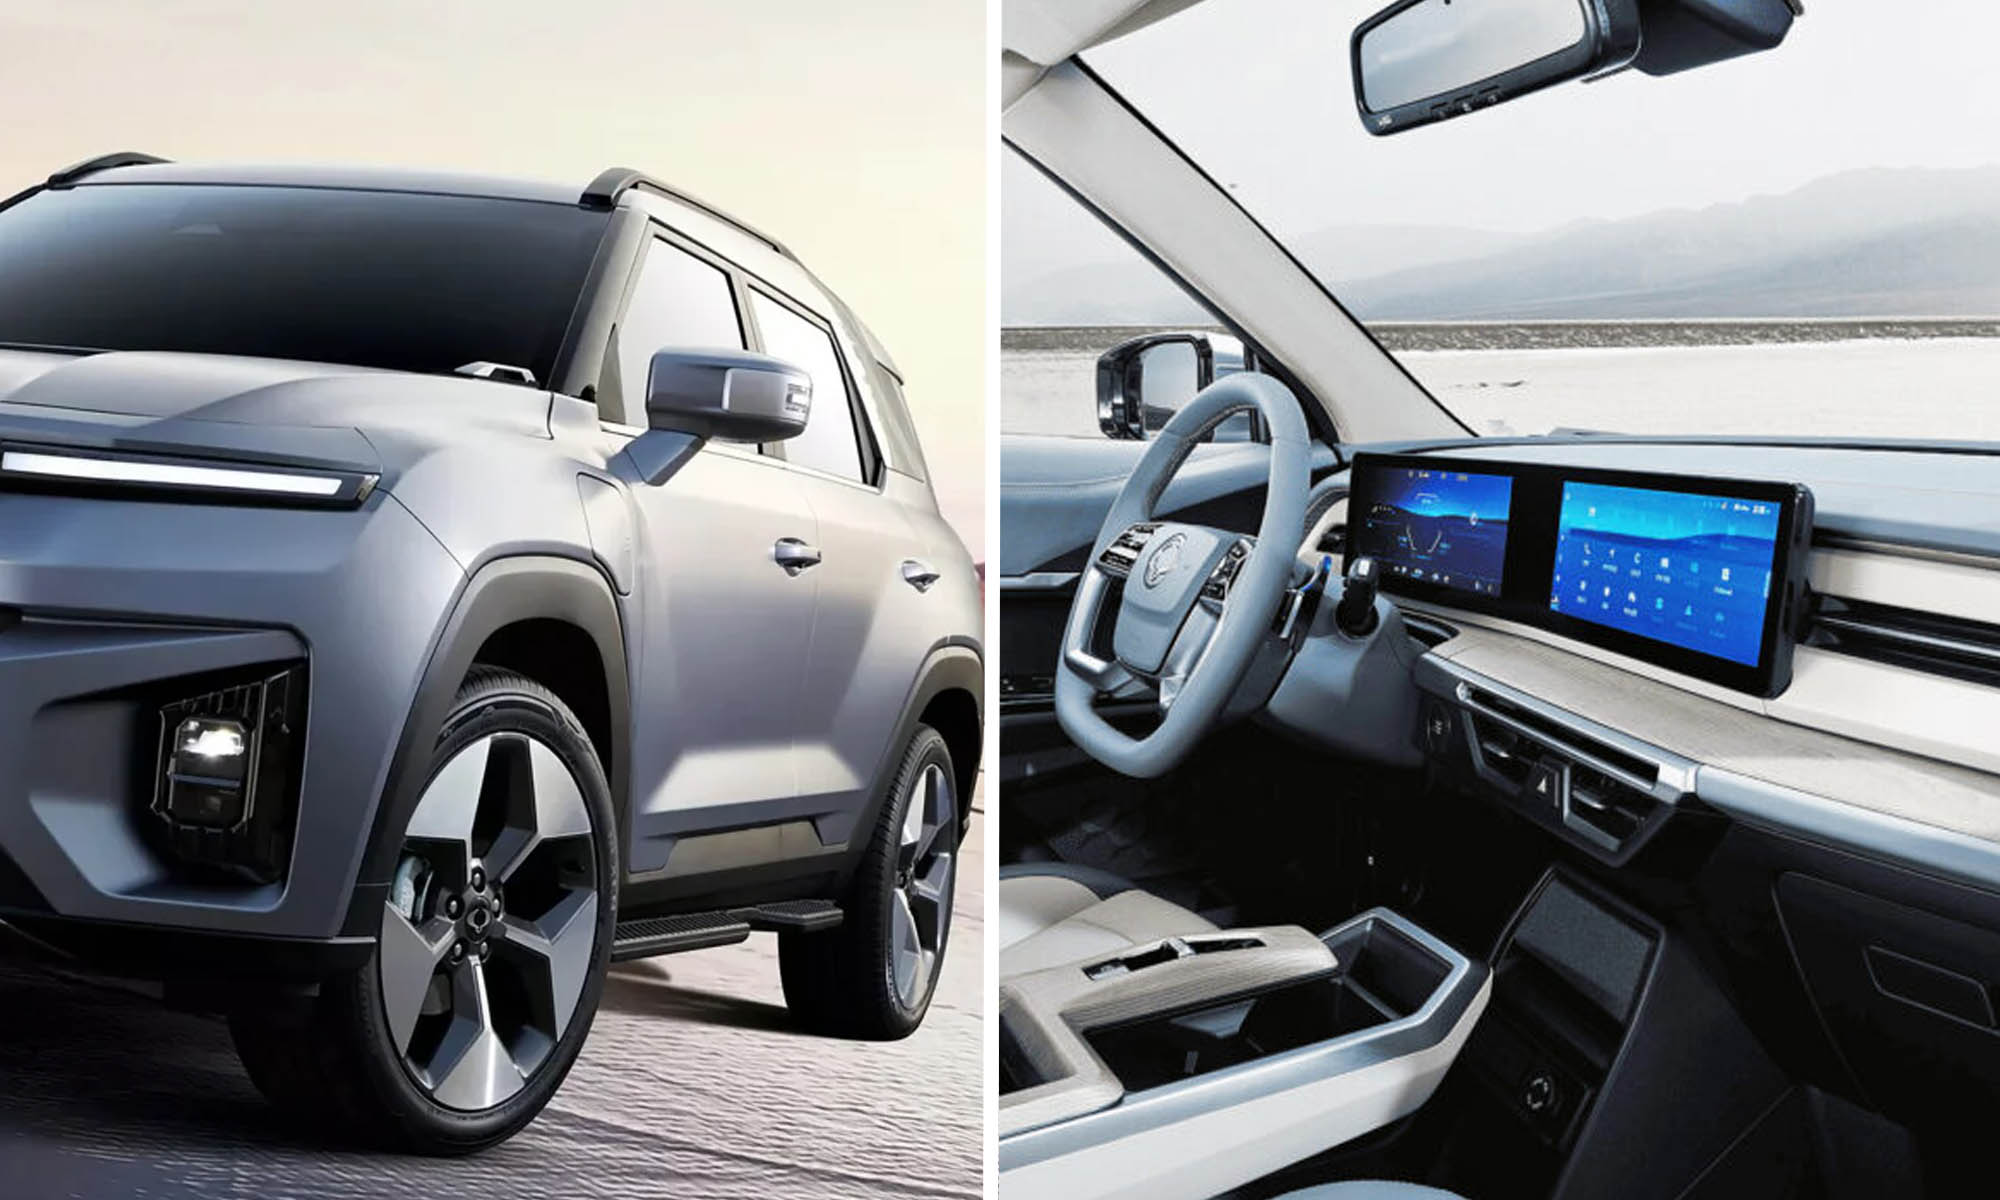 La versión eléctrica de este SUV mostrará cambios profundos en diseño e interior.